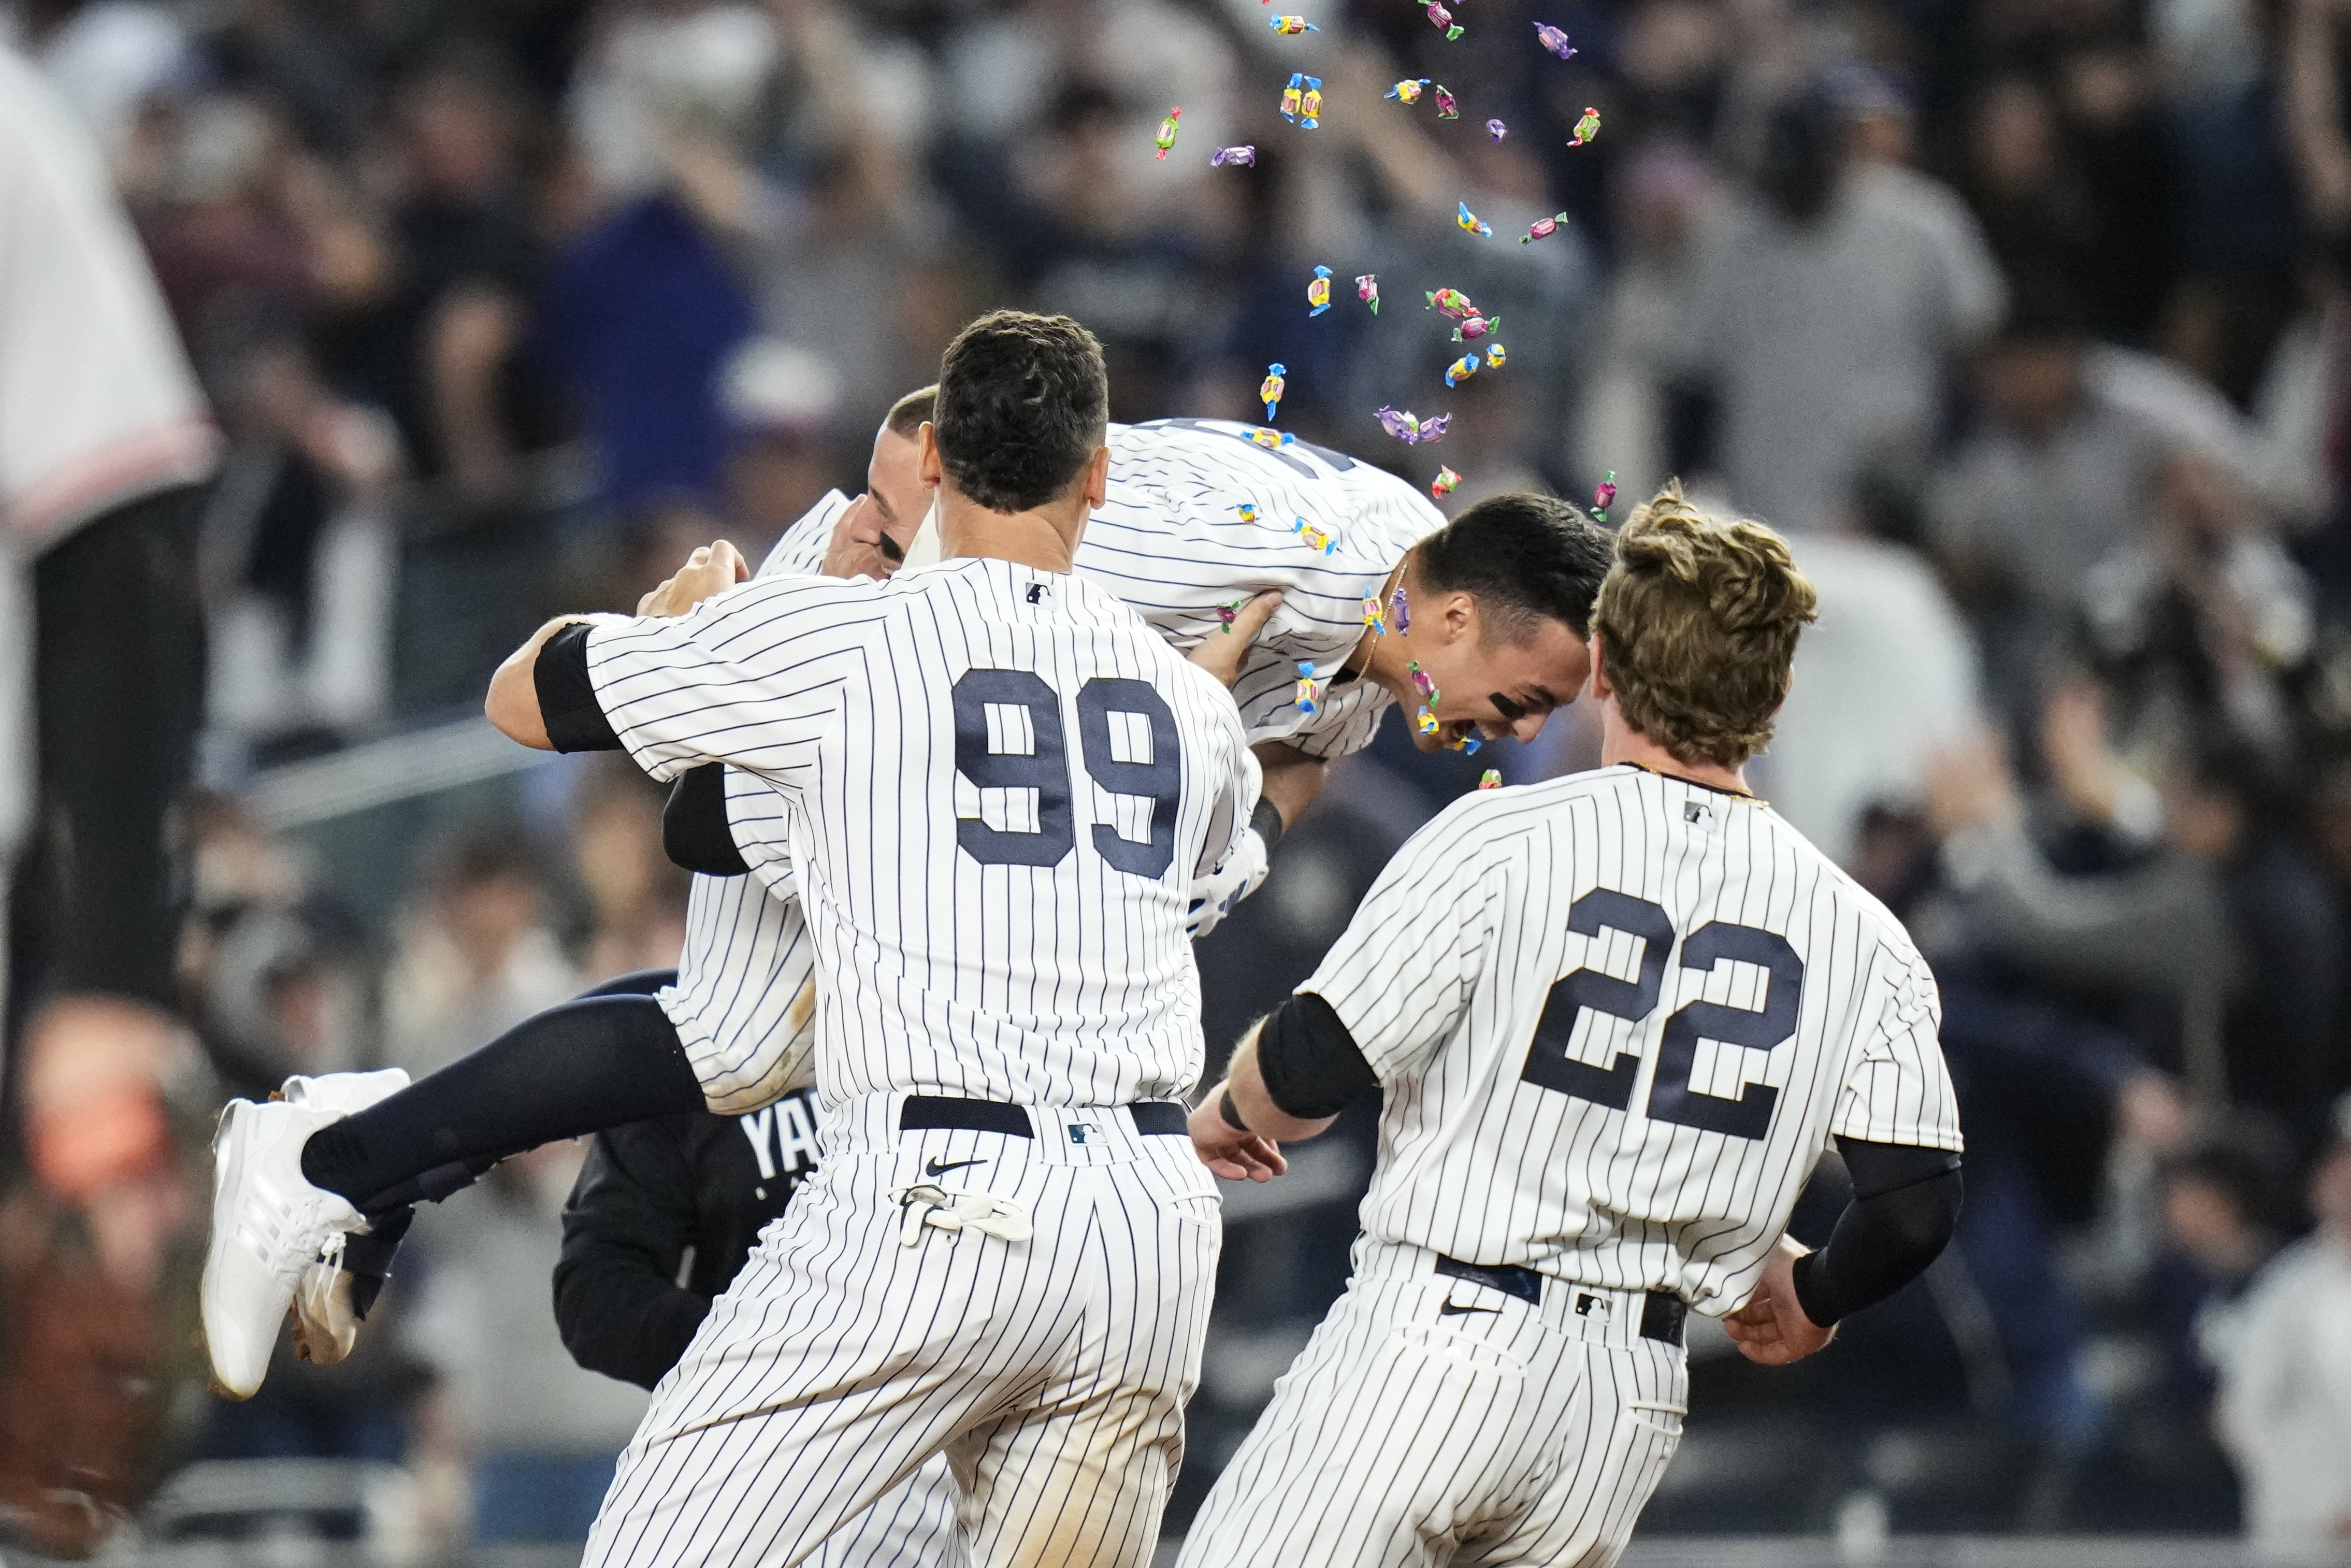 Yankees 11-game winning streak: 7 things we learned from it